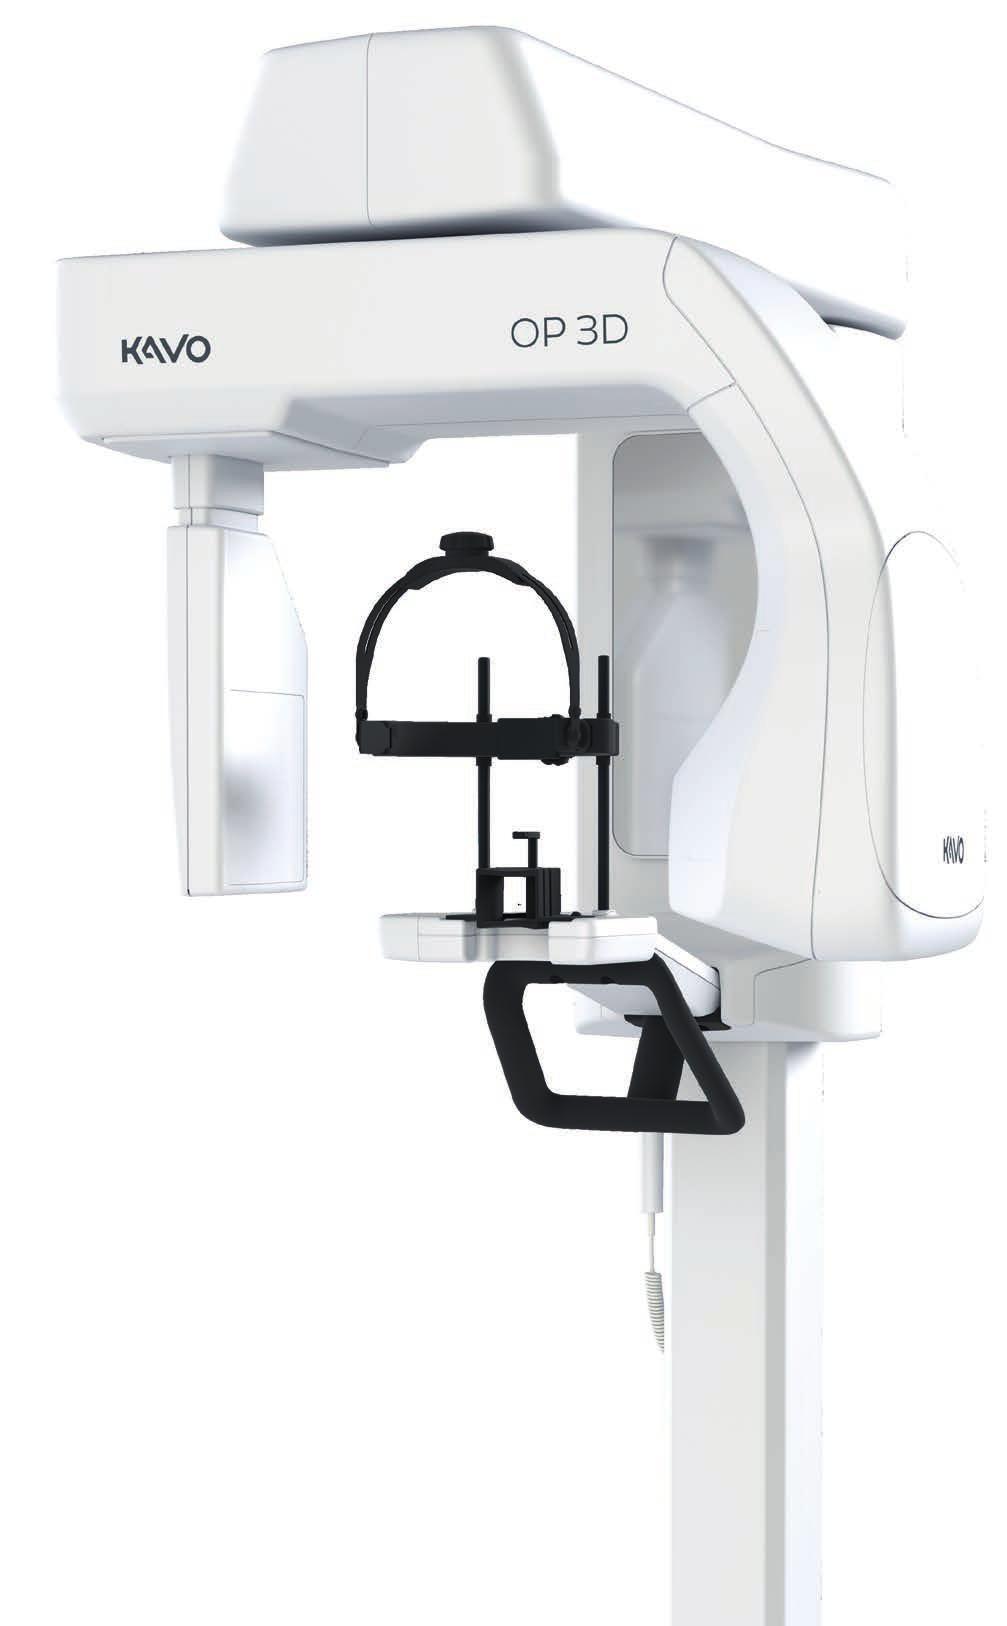 Nowa definicja wydajności: KaVo ORTHOPANTOMOGRAPH OP 3D Dzięki pojawieniu się OP 3D wybór pierwszego tomografu 3D stał się prosty.